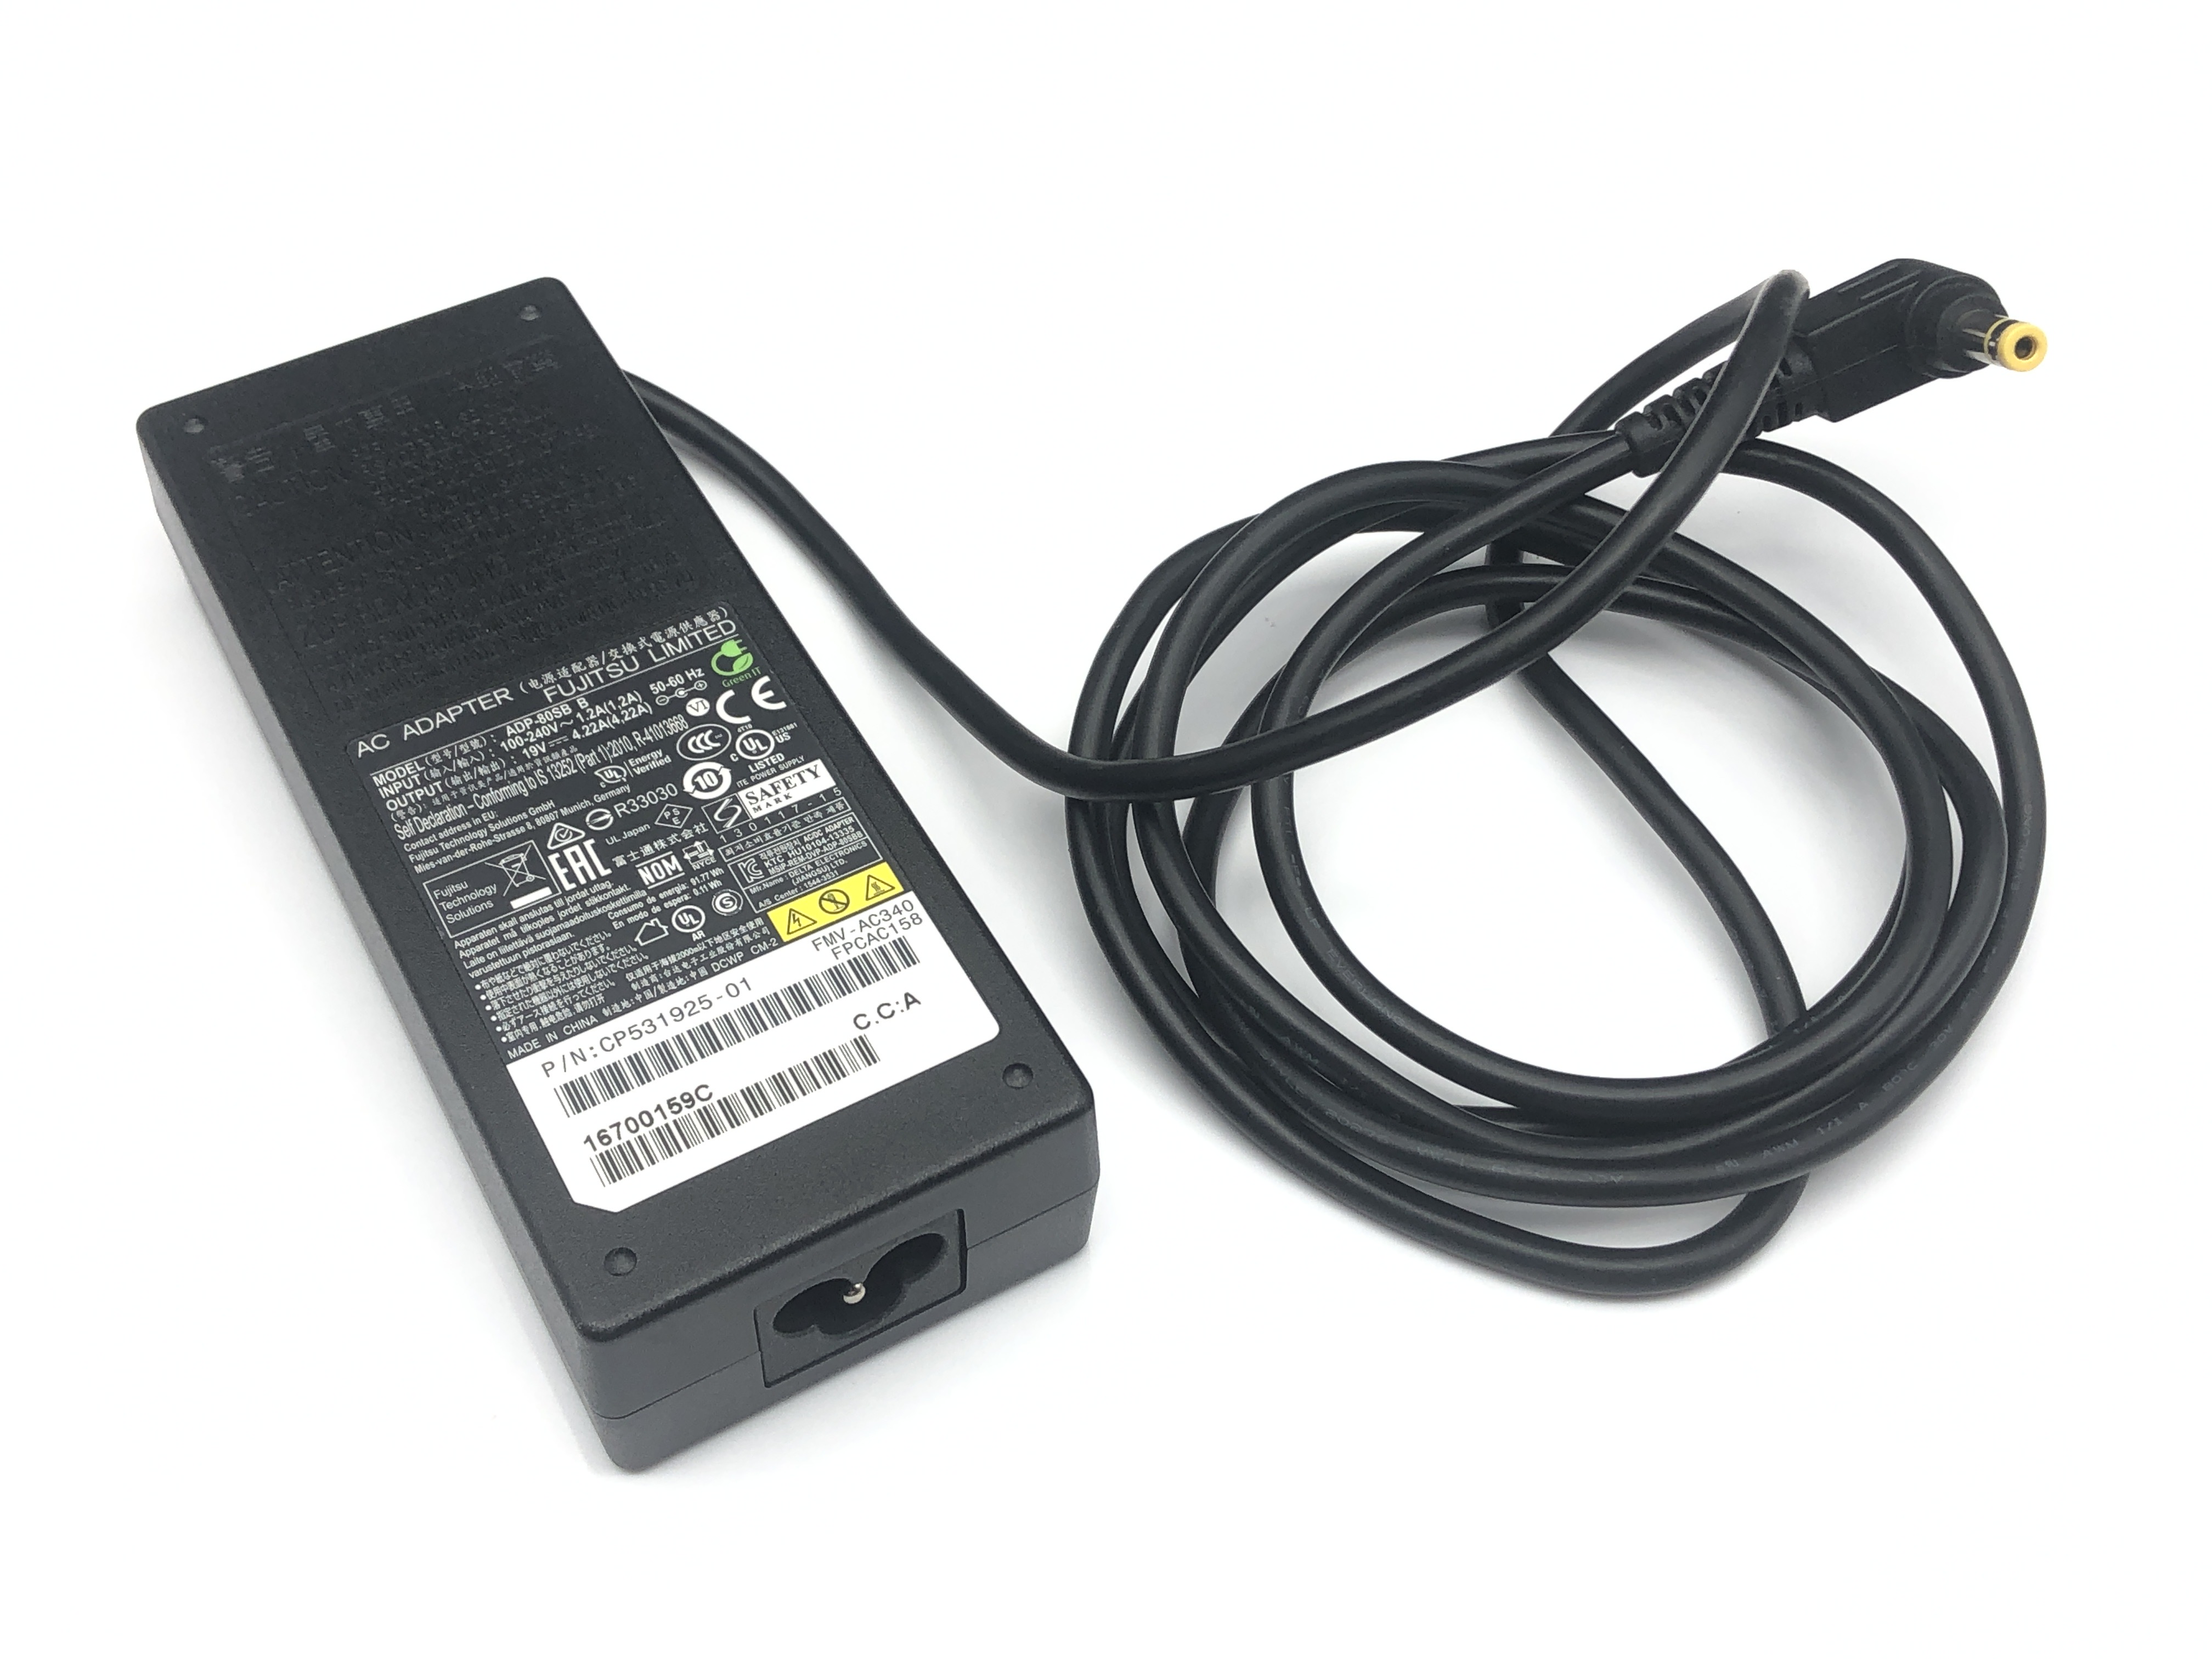 Fujitsu AC Adapter Netzteil Ladegerät Kompatibel für MSI fx700 i3847w7p, ms 163d